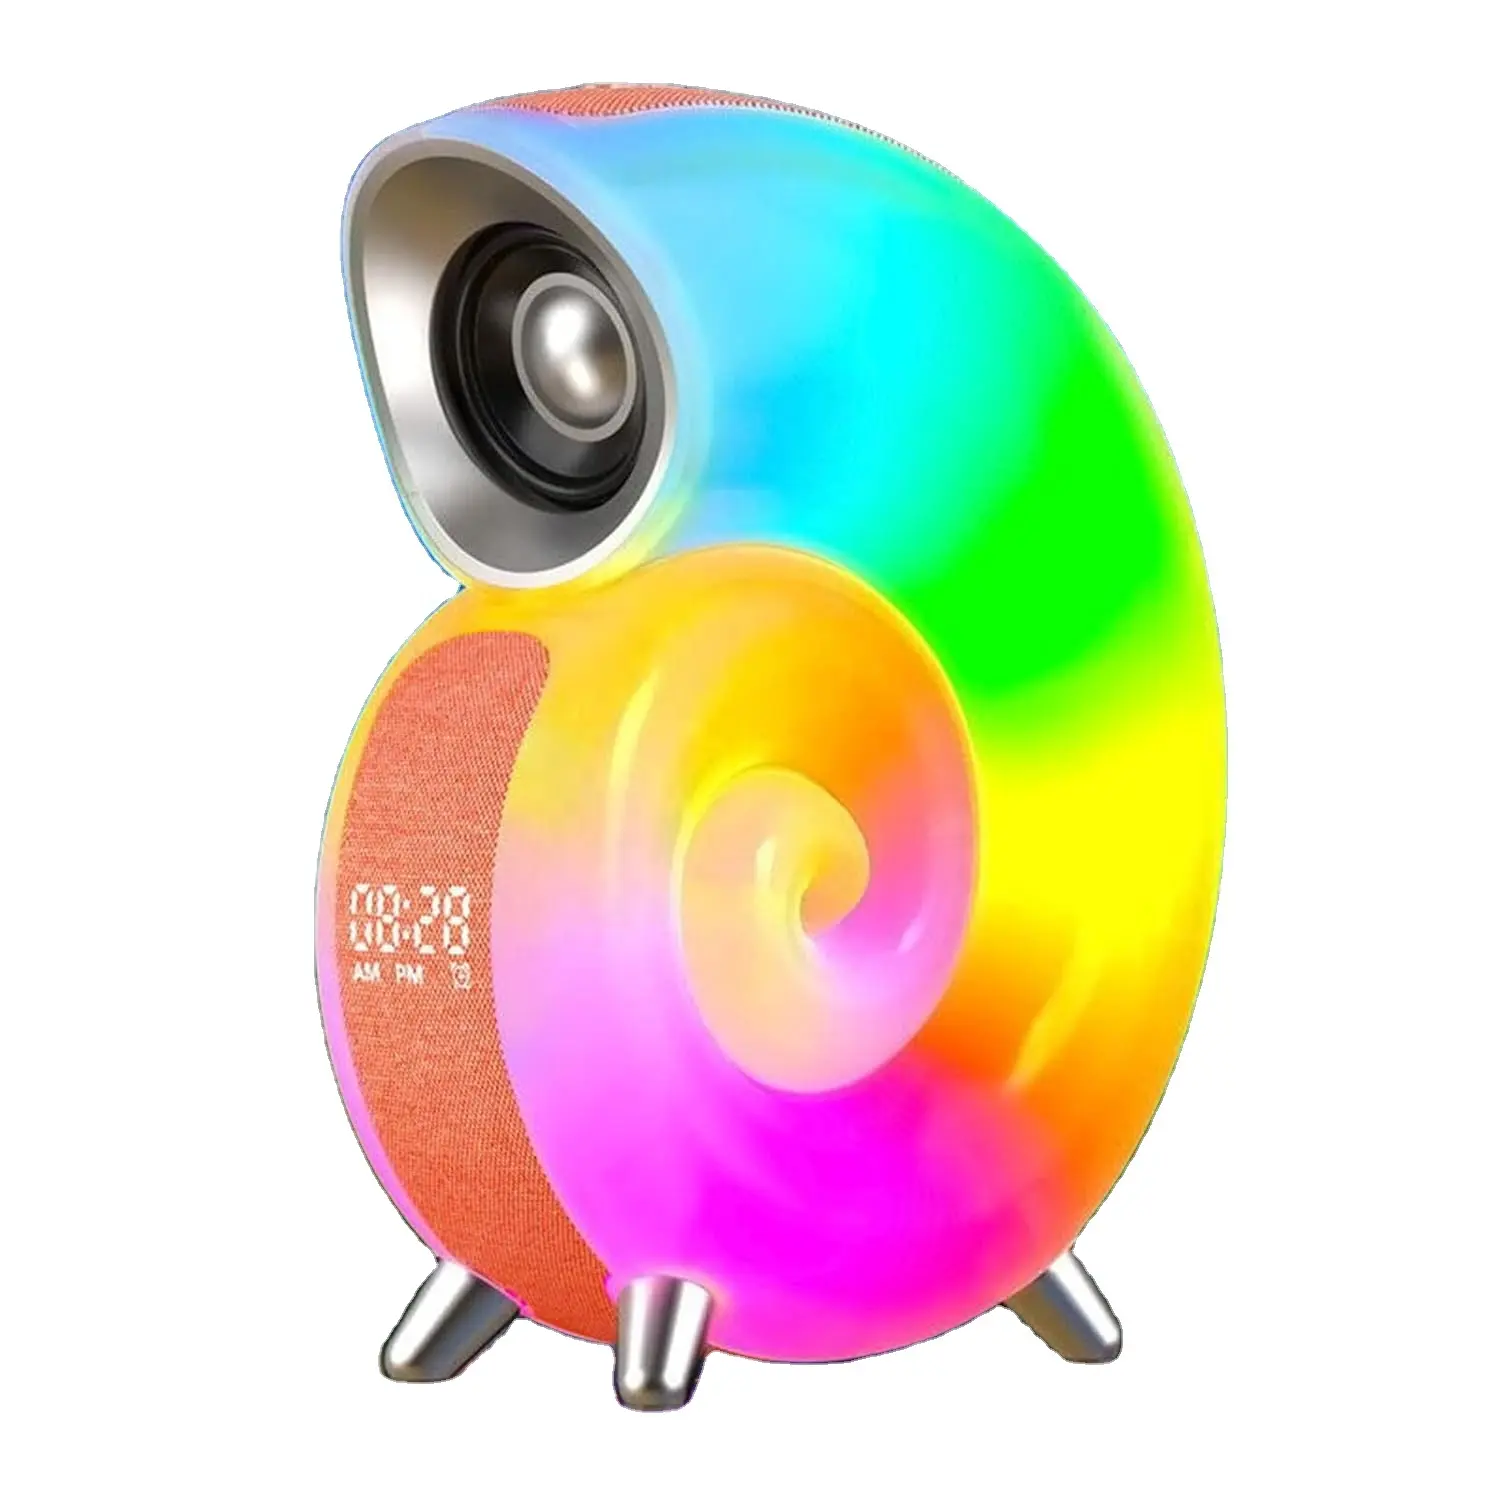 Renkli uyandırma işığı Conch ortam ışığı beyaz gürültü makinesi çalar saat kablosuz BT hoparlör APP kontrol uyku eğitmen ışık